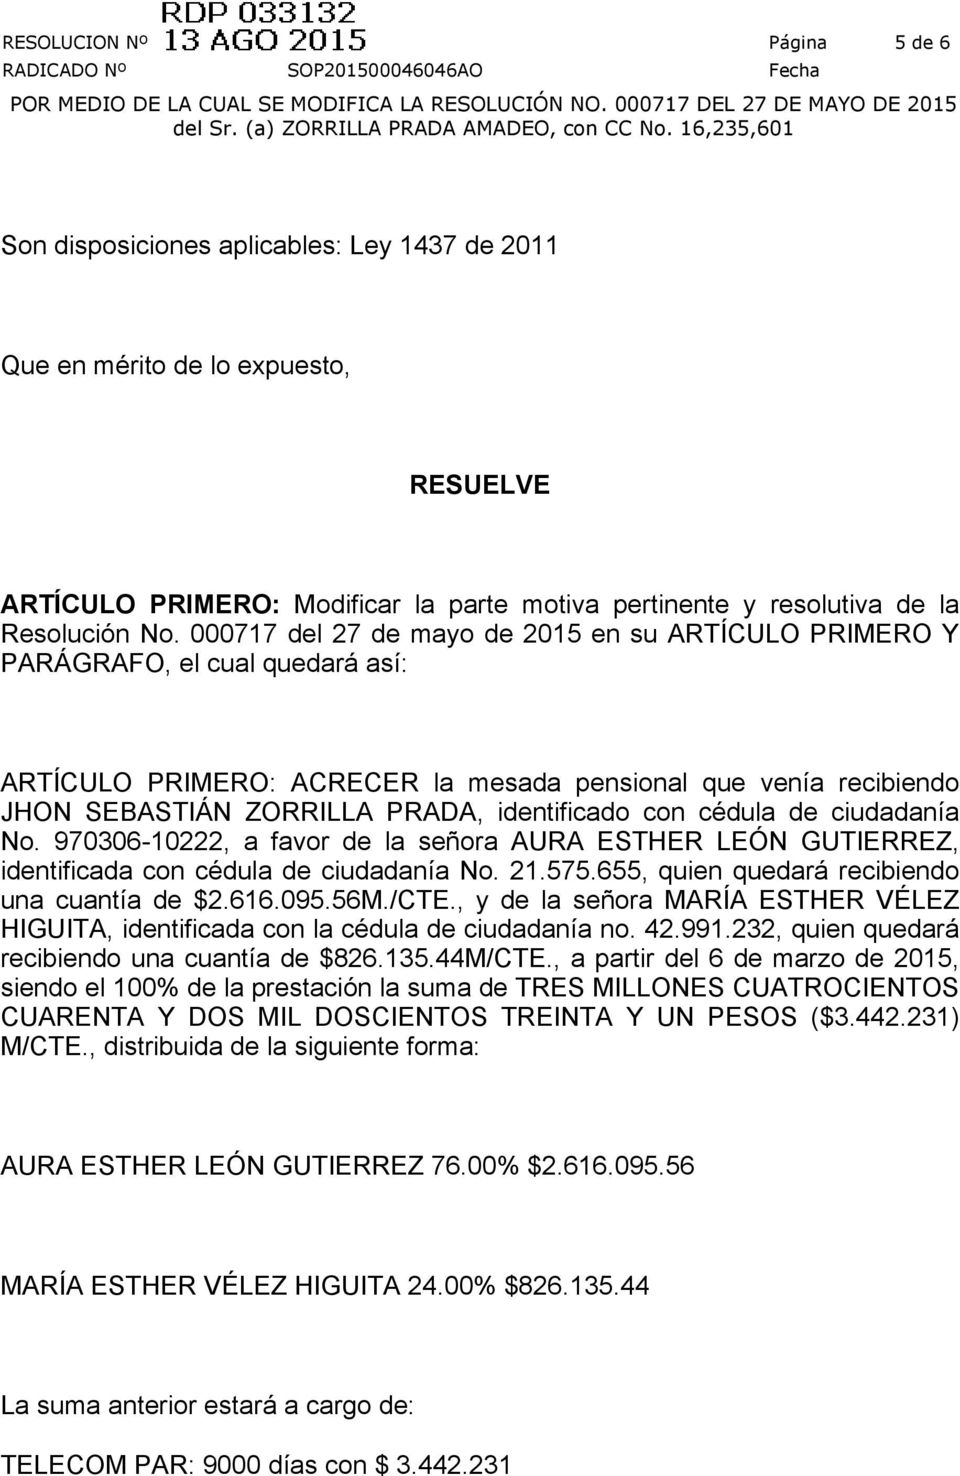 identificado con cédula de ciudadanía No. 970306-10222, a favor de la señora AURA ESTHER LEÓN GUTIERREZ, identificada con cédula de ciudadanía No. 21.575.